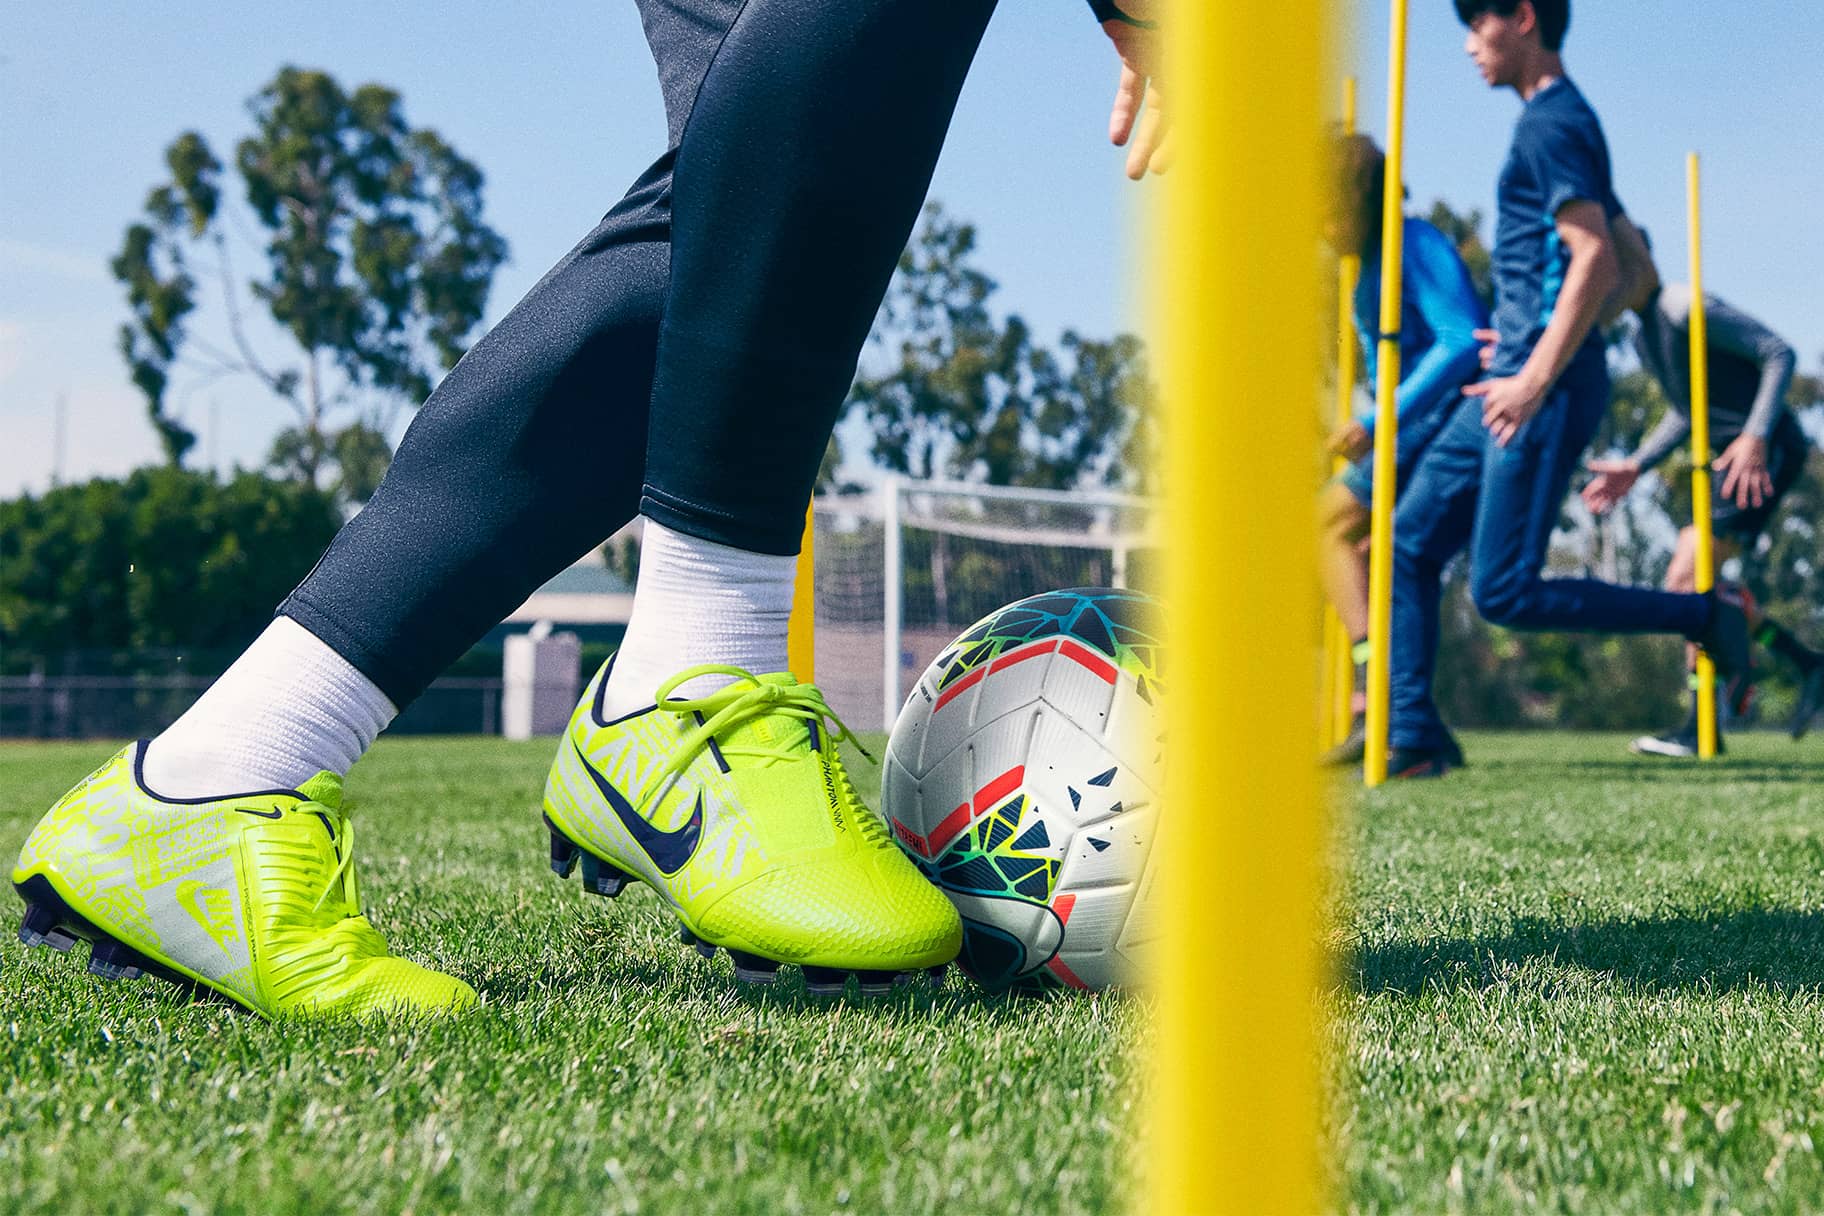 Com s'haurien d'ajustar les botes de futbol?